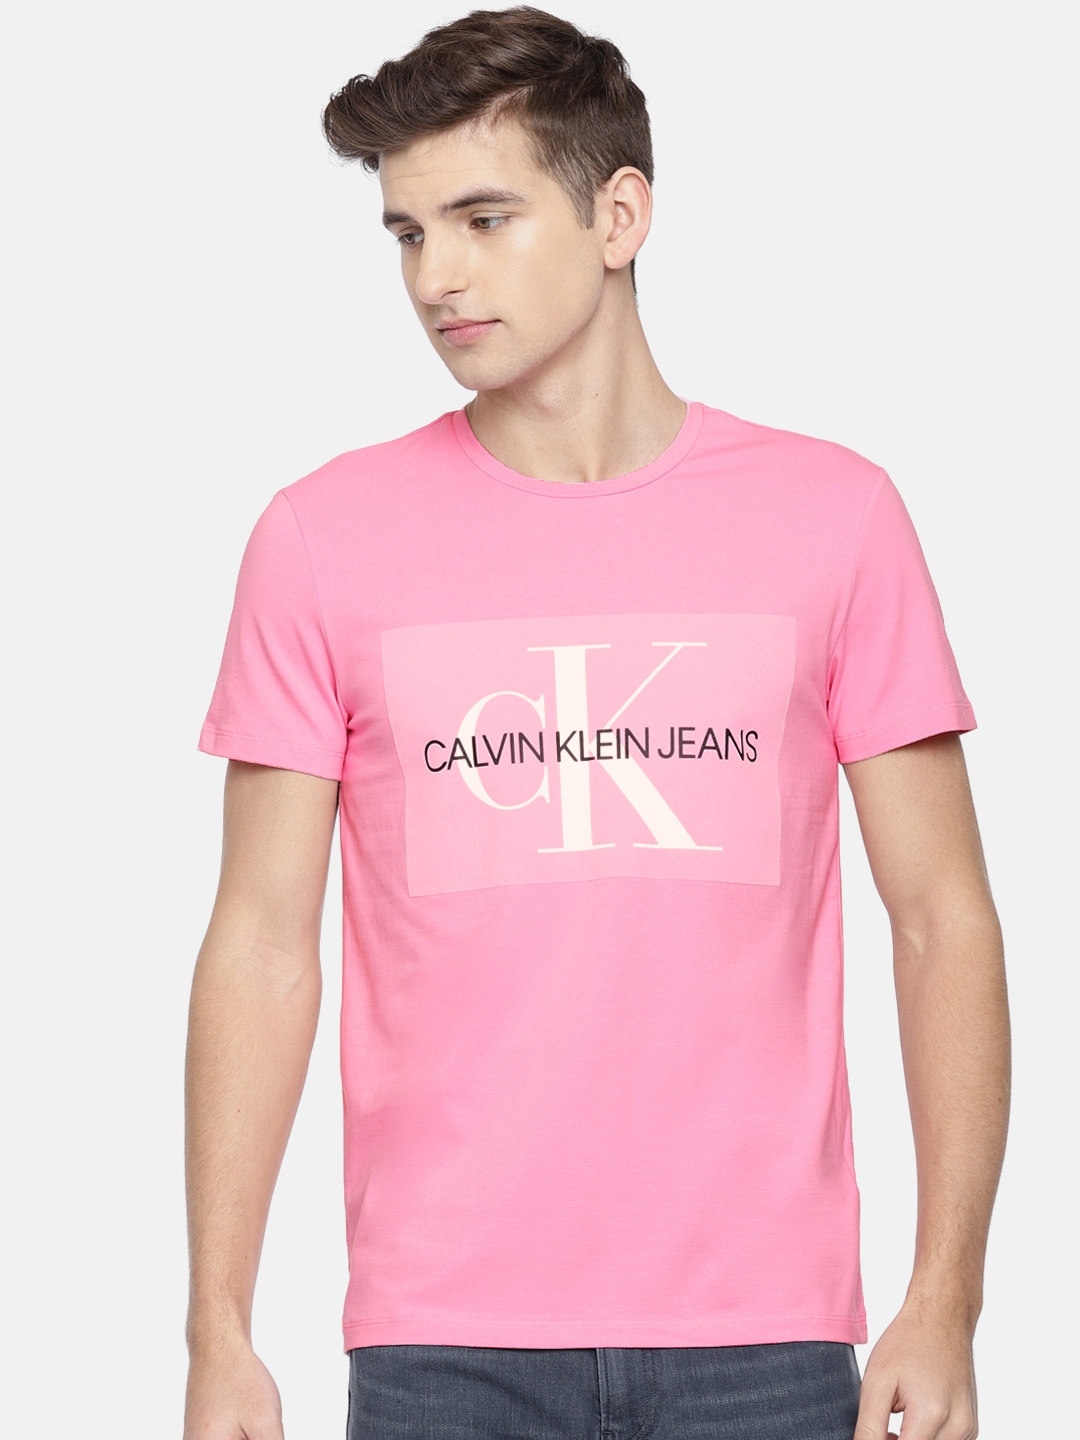 Actualizar 31+ imagen calvin klein pink t shirt mens